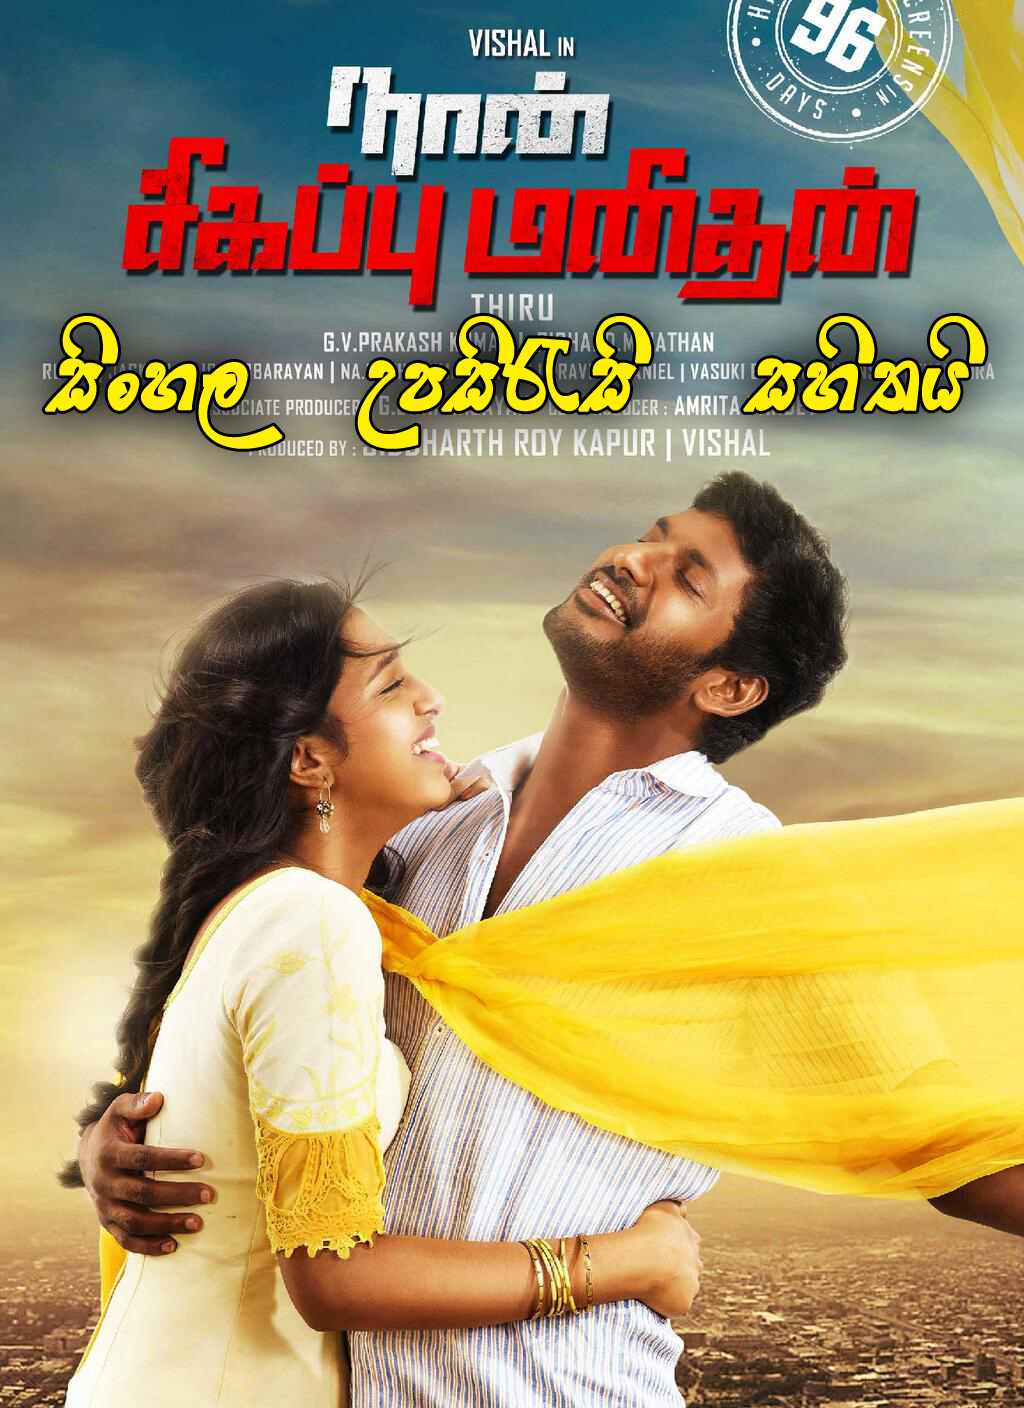 inaintha kaigal tamil full movie download